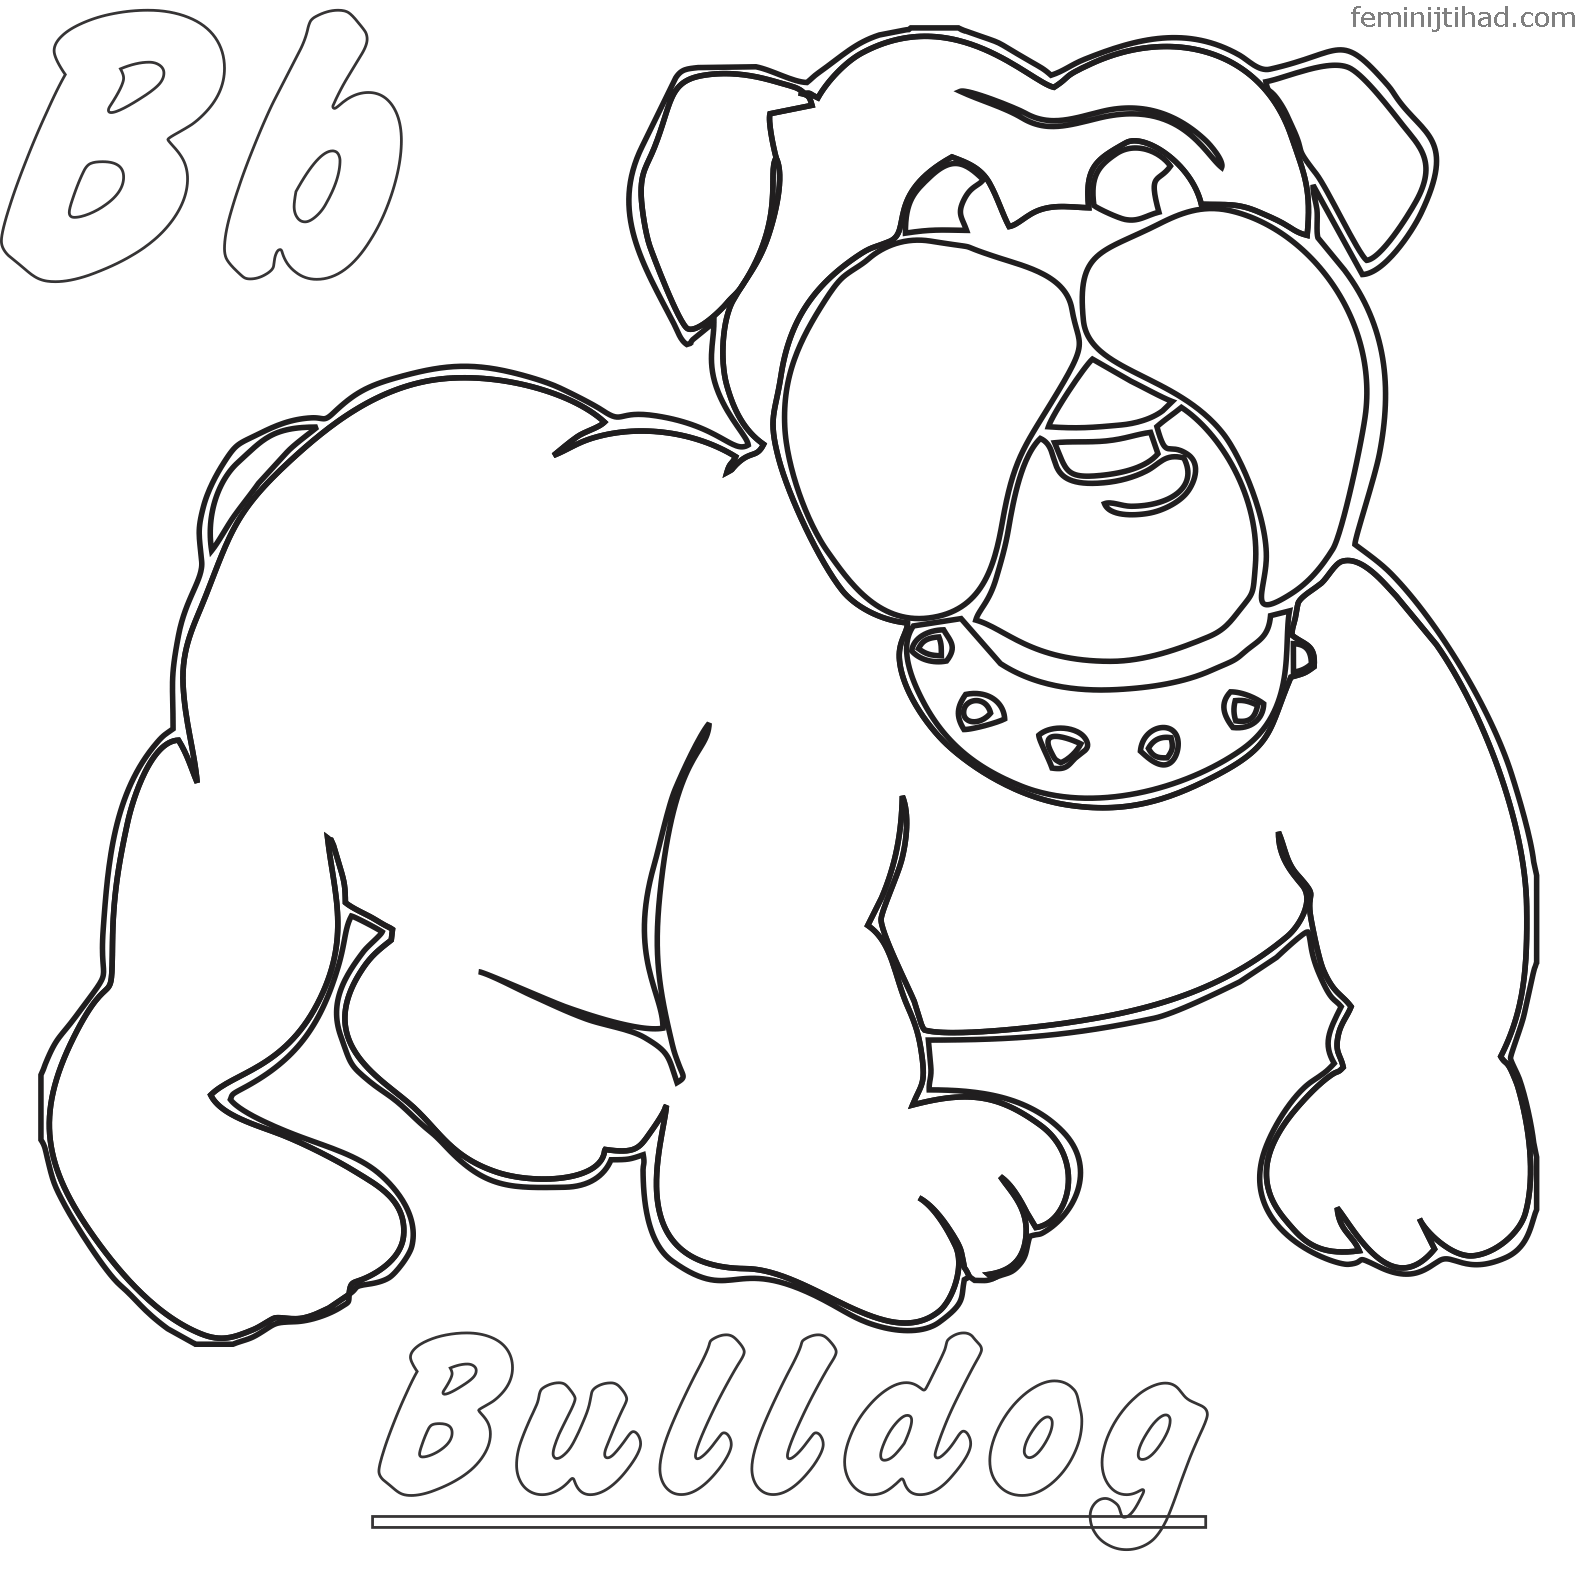 American Bulldog Coloring Pages at Free printable